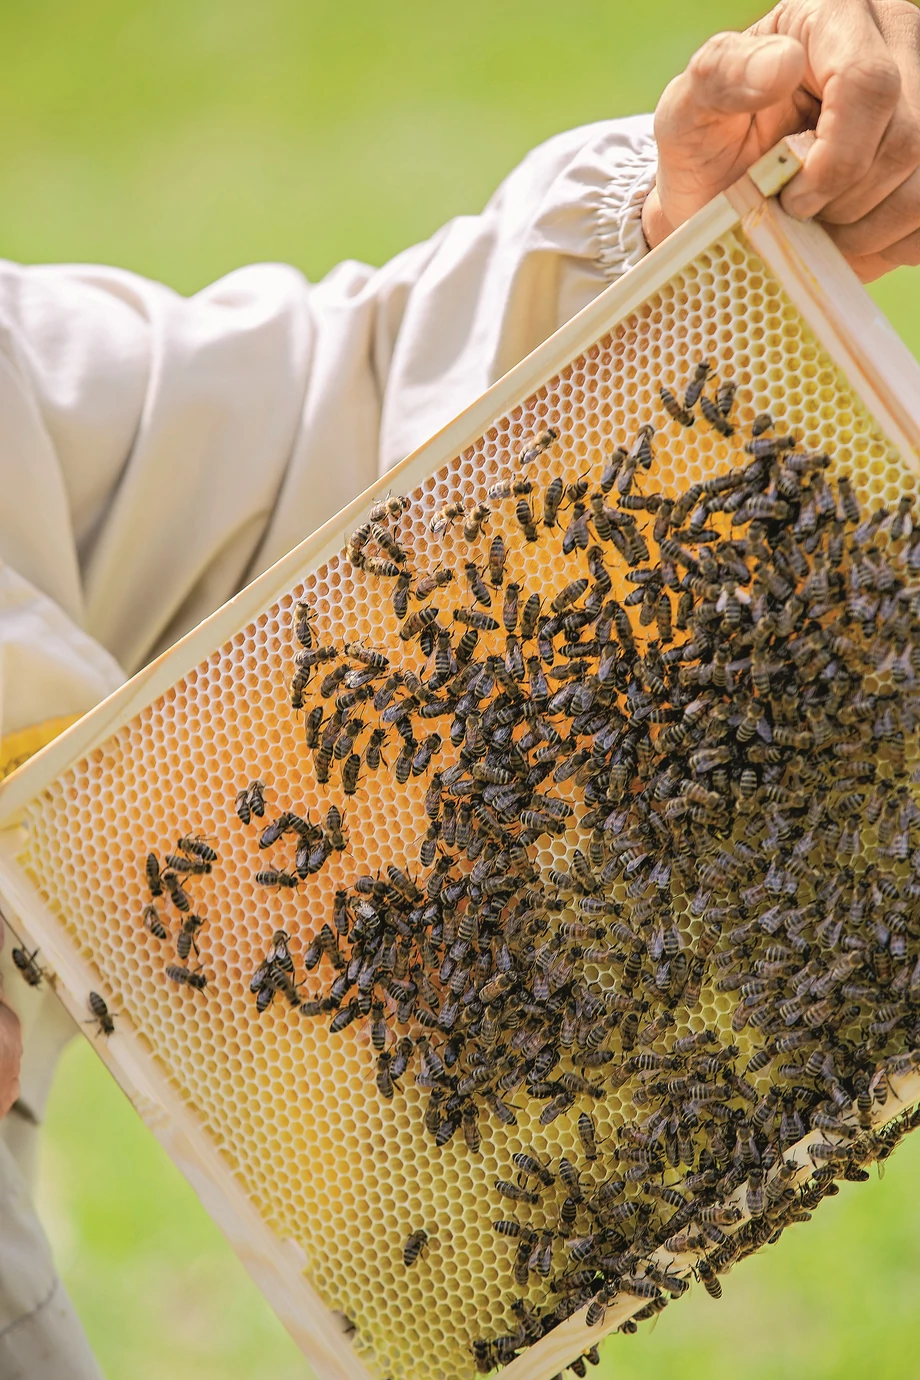 - Pszczelarze mogą u nas kupić właściwie wszystko, co jest potrzebne do prowadzenia własnej pasieki - mówi Tomasz Łysoń, prezes Grupy Łysoń